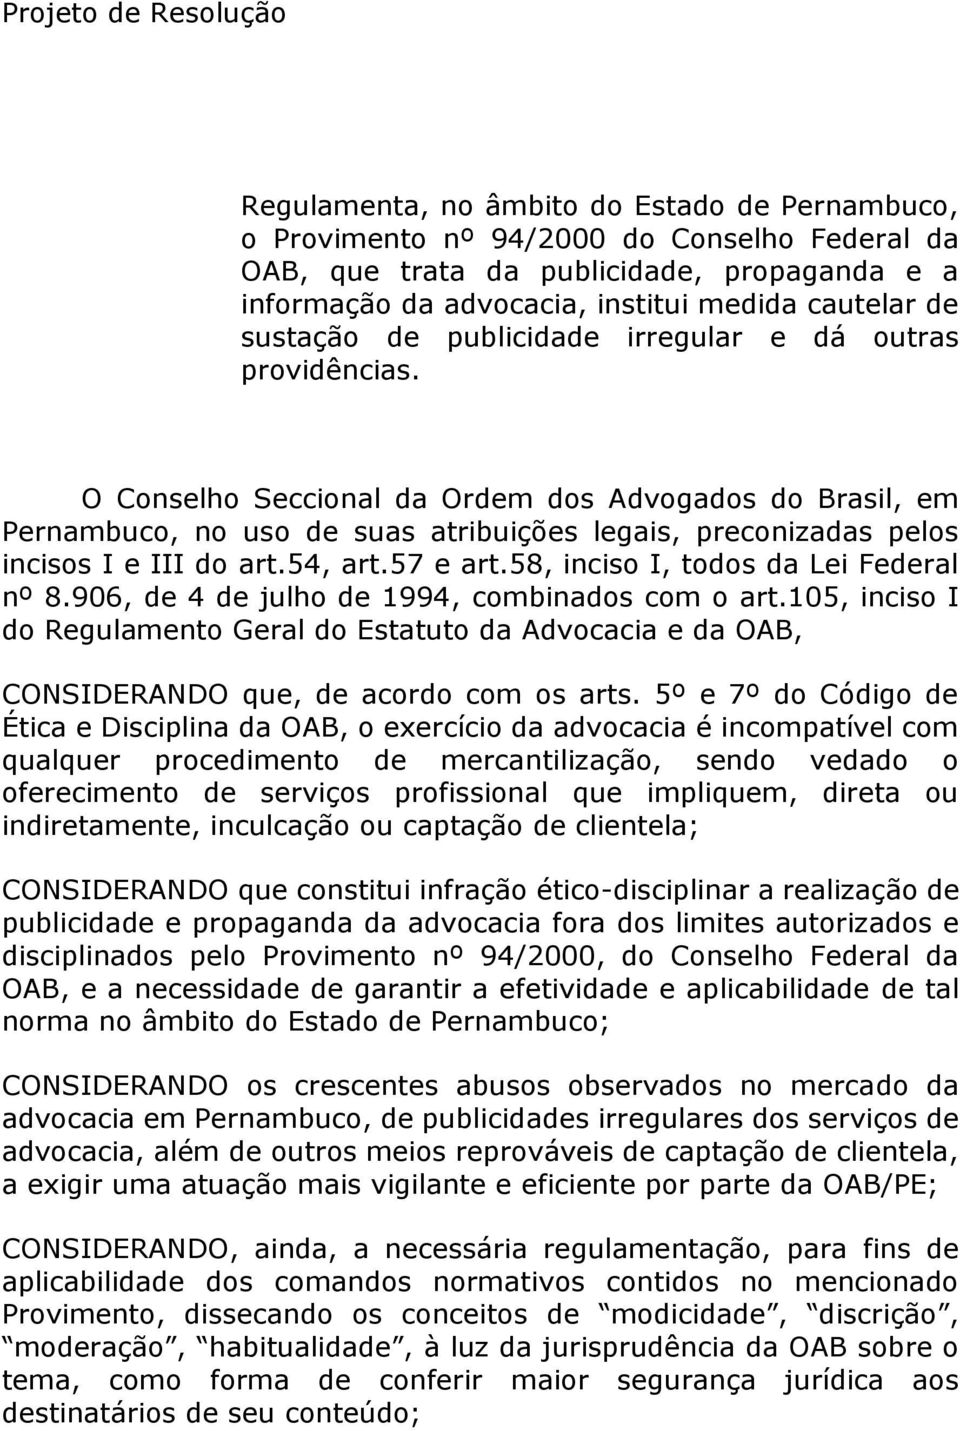 O Conselho Seccional da Ordem dos Advogados do Brasil, em Pernambuco, no uso de suas atribuições legais, preconizadas pelos incisos I e III do art.54, art.57 e art.